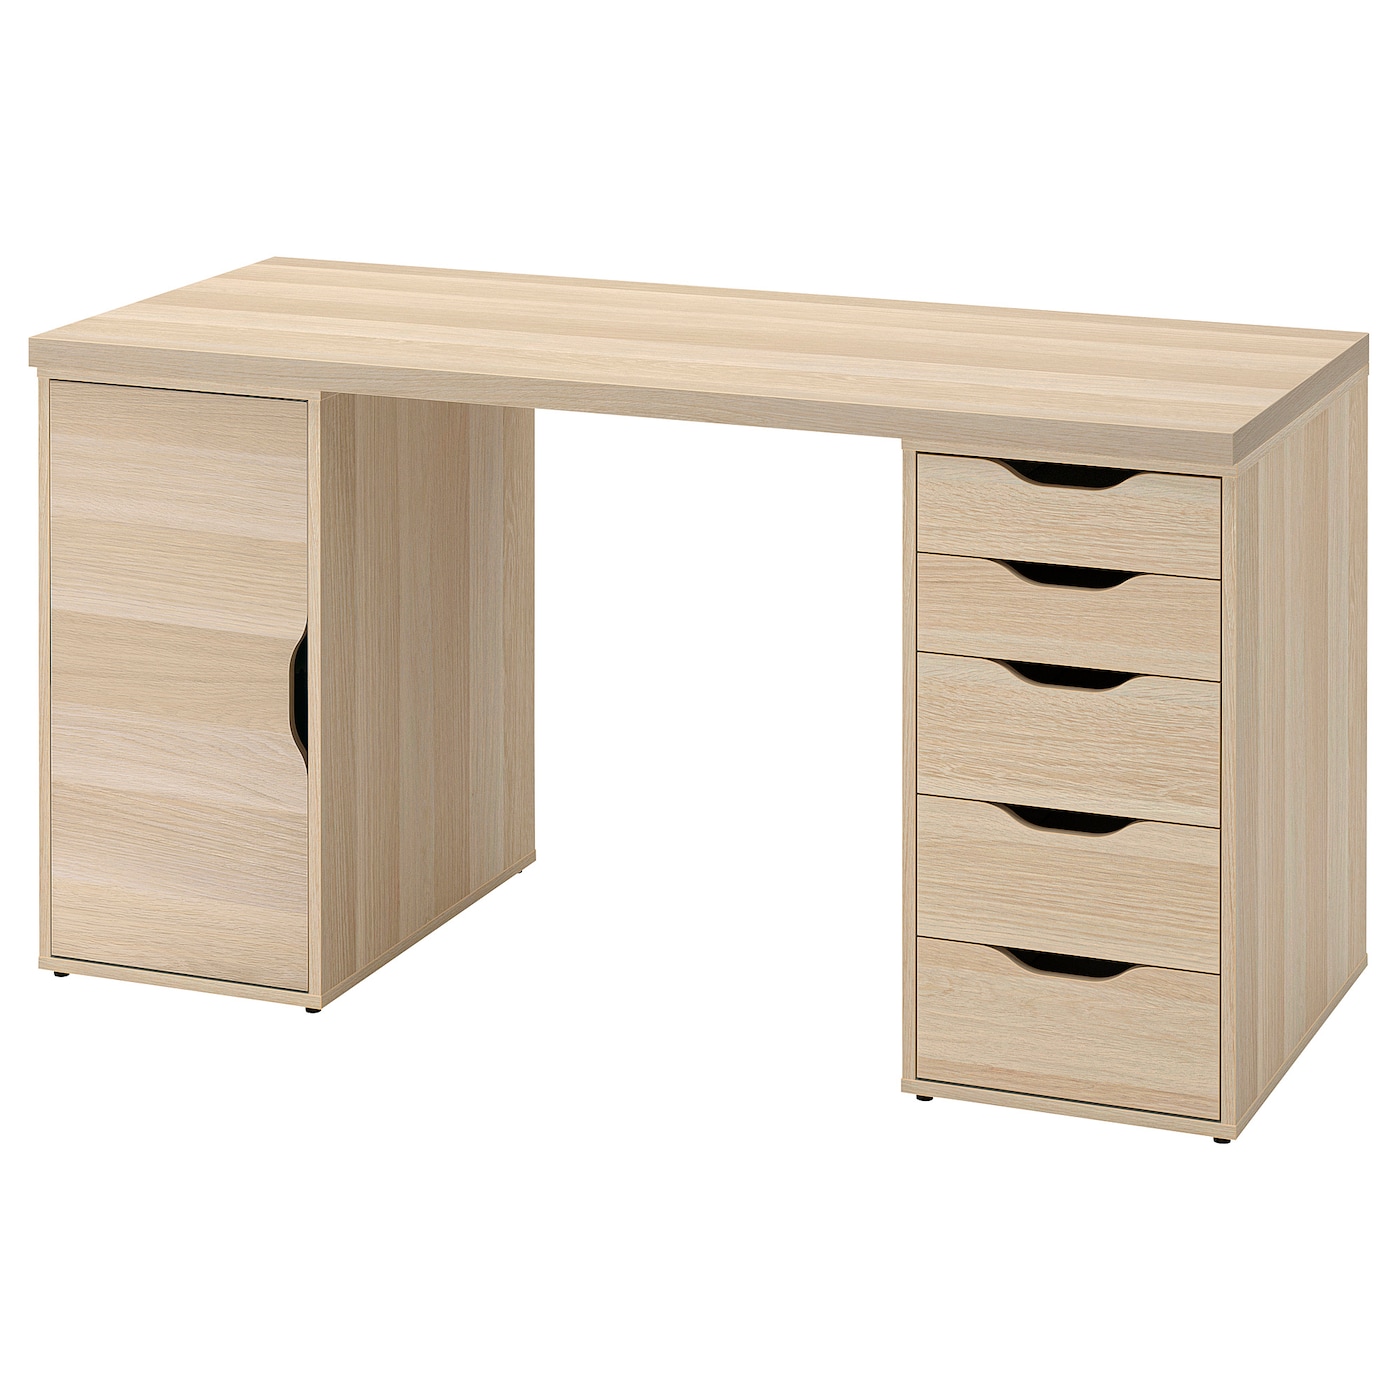 Письменный стол с ящиками - IKEA LAGKAPTEN/ALEX, 140х60 см, под беленый дуб, ЛАГКАПТЕН/АЛЕКС ИКЕА